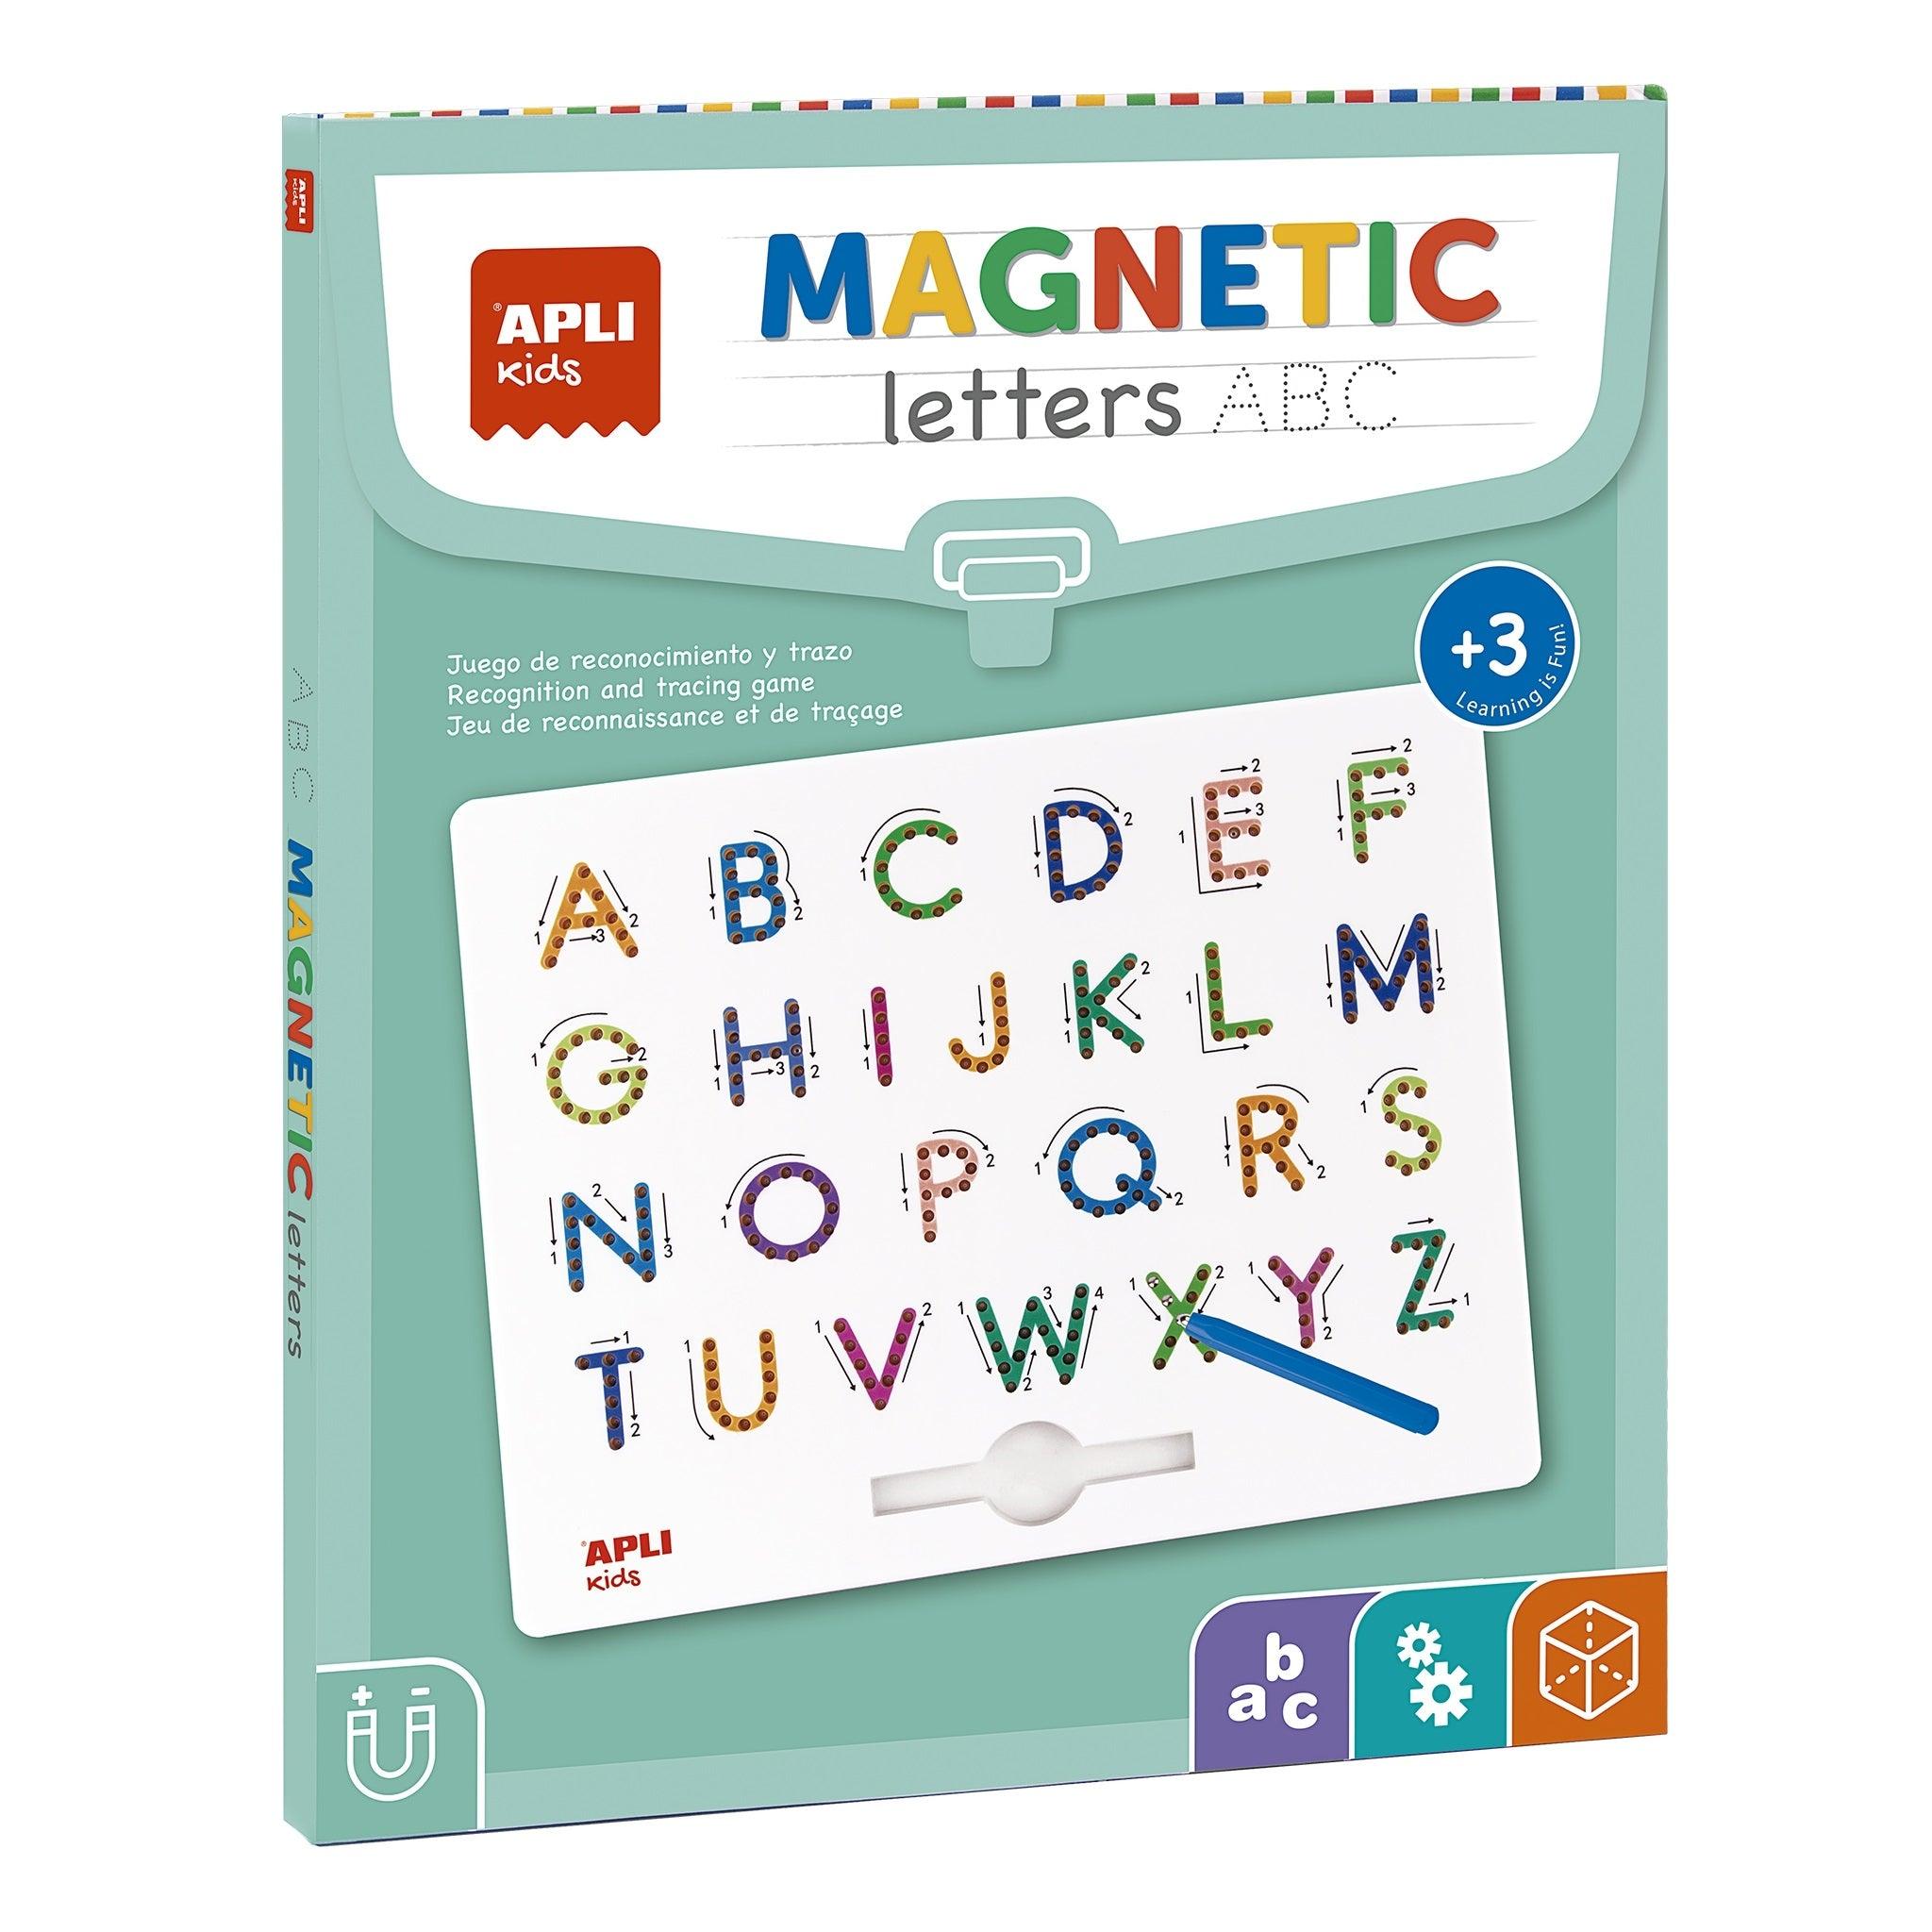 Appli gyerekek: Mágneses tábla ABC mágneses betűk rajzolásához